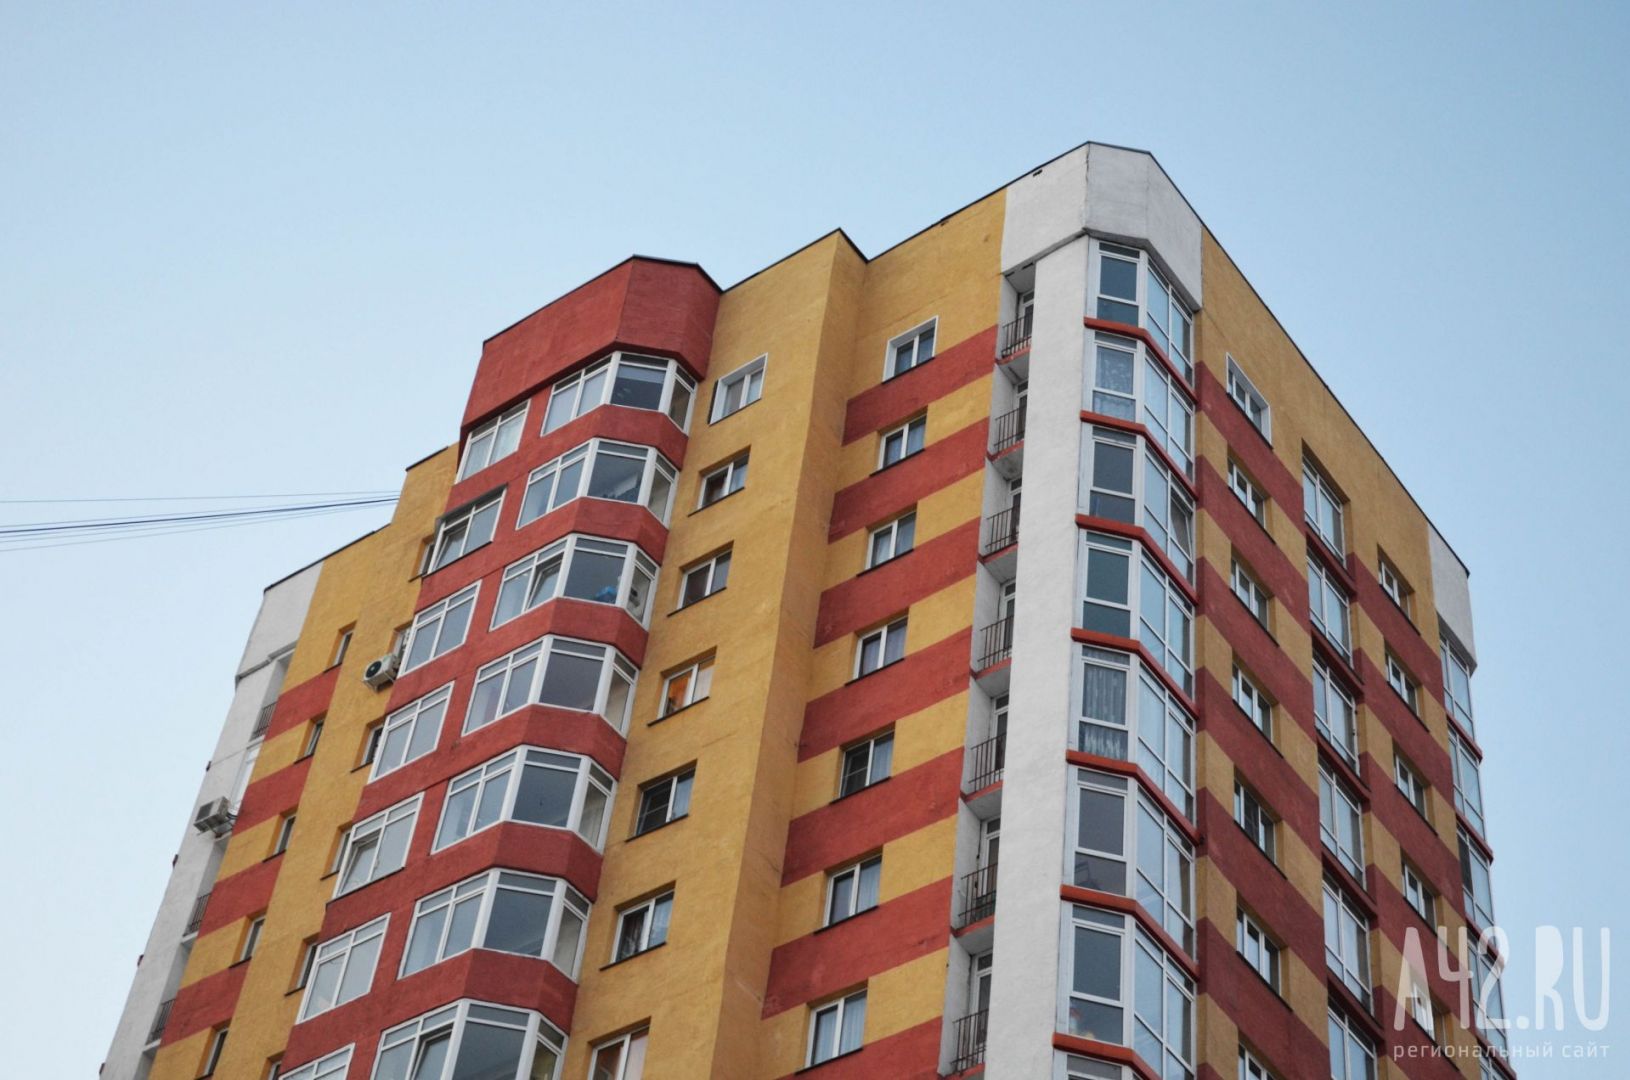 Нормативная стоимость квадратного метра жилья в третьем квартале в Кузбассе вырастет до 91,2 тысячи рублей